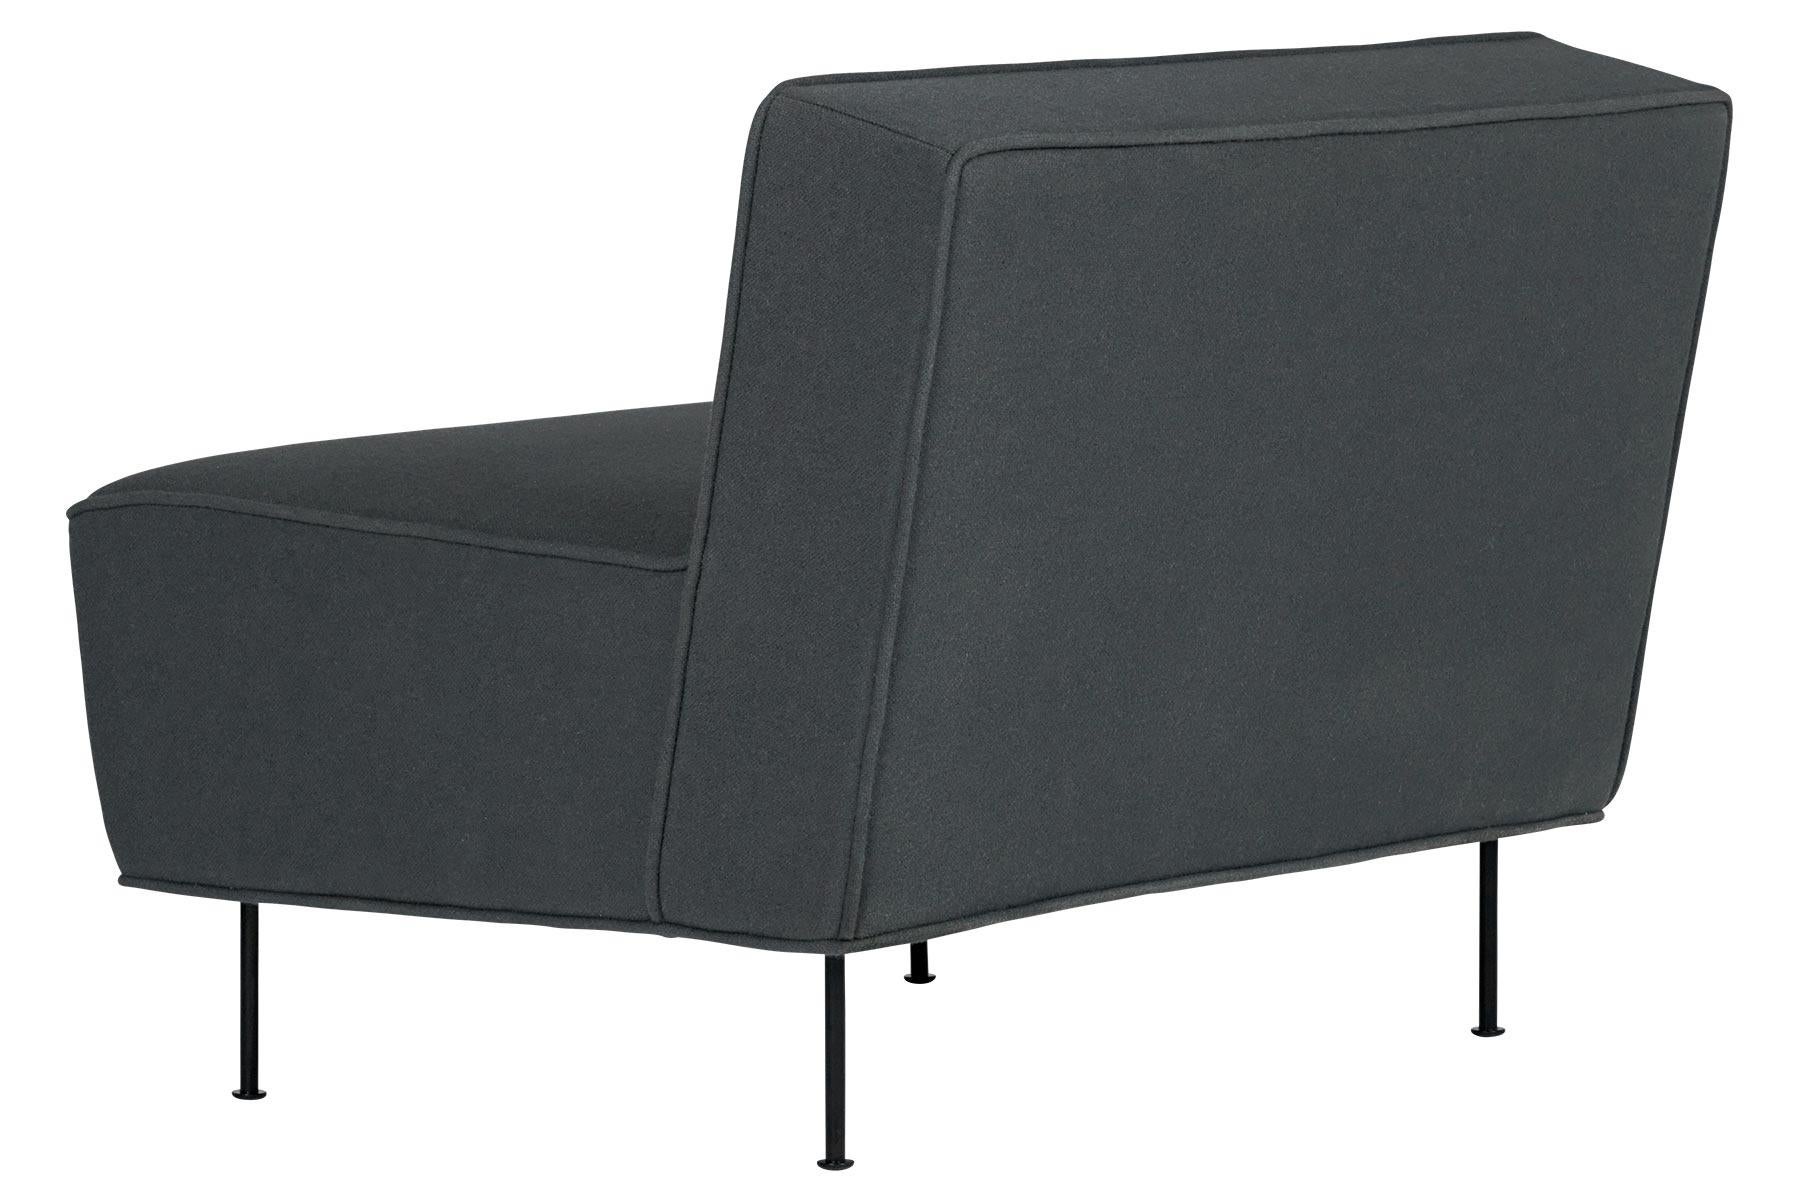 Der Modern Line Lounge Stuhl wurde 1949 von Greta M. Grossman entworfen. Modern Line war einer ihrer elegantesten und minimalistischsten Entwürfe und wurde besonders dafür gelobt, dass er ihren Hintergrund im skandinavischen Design repräsentiert.